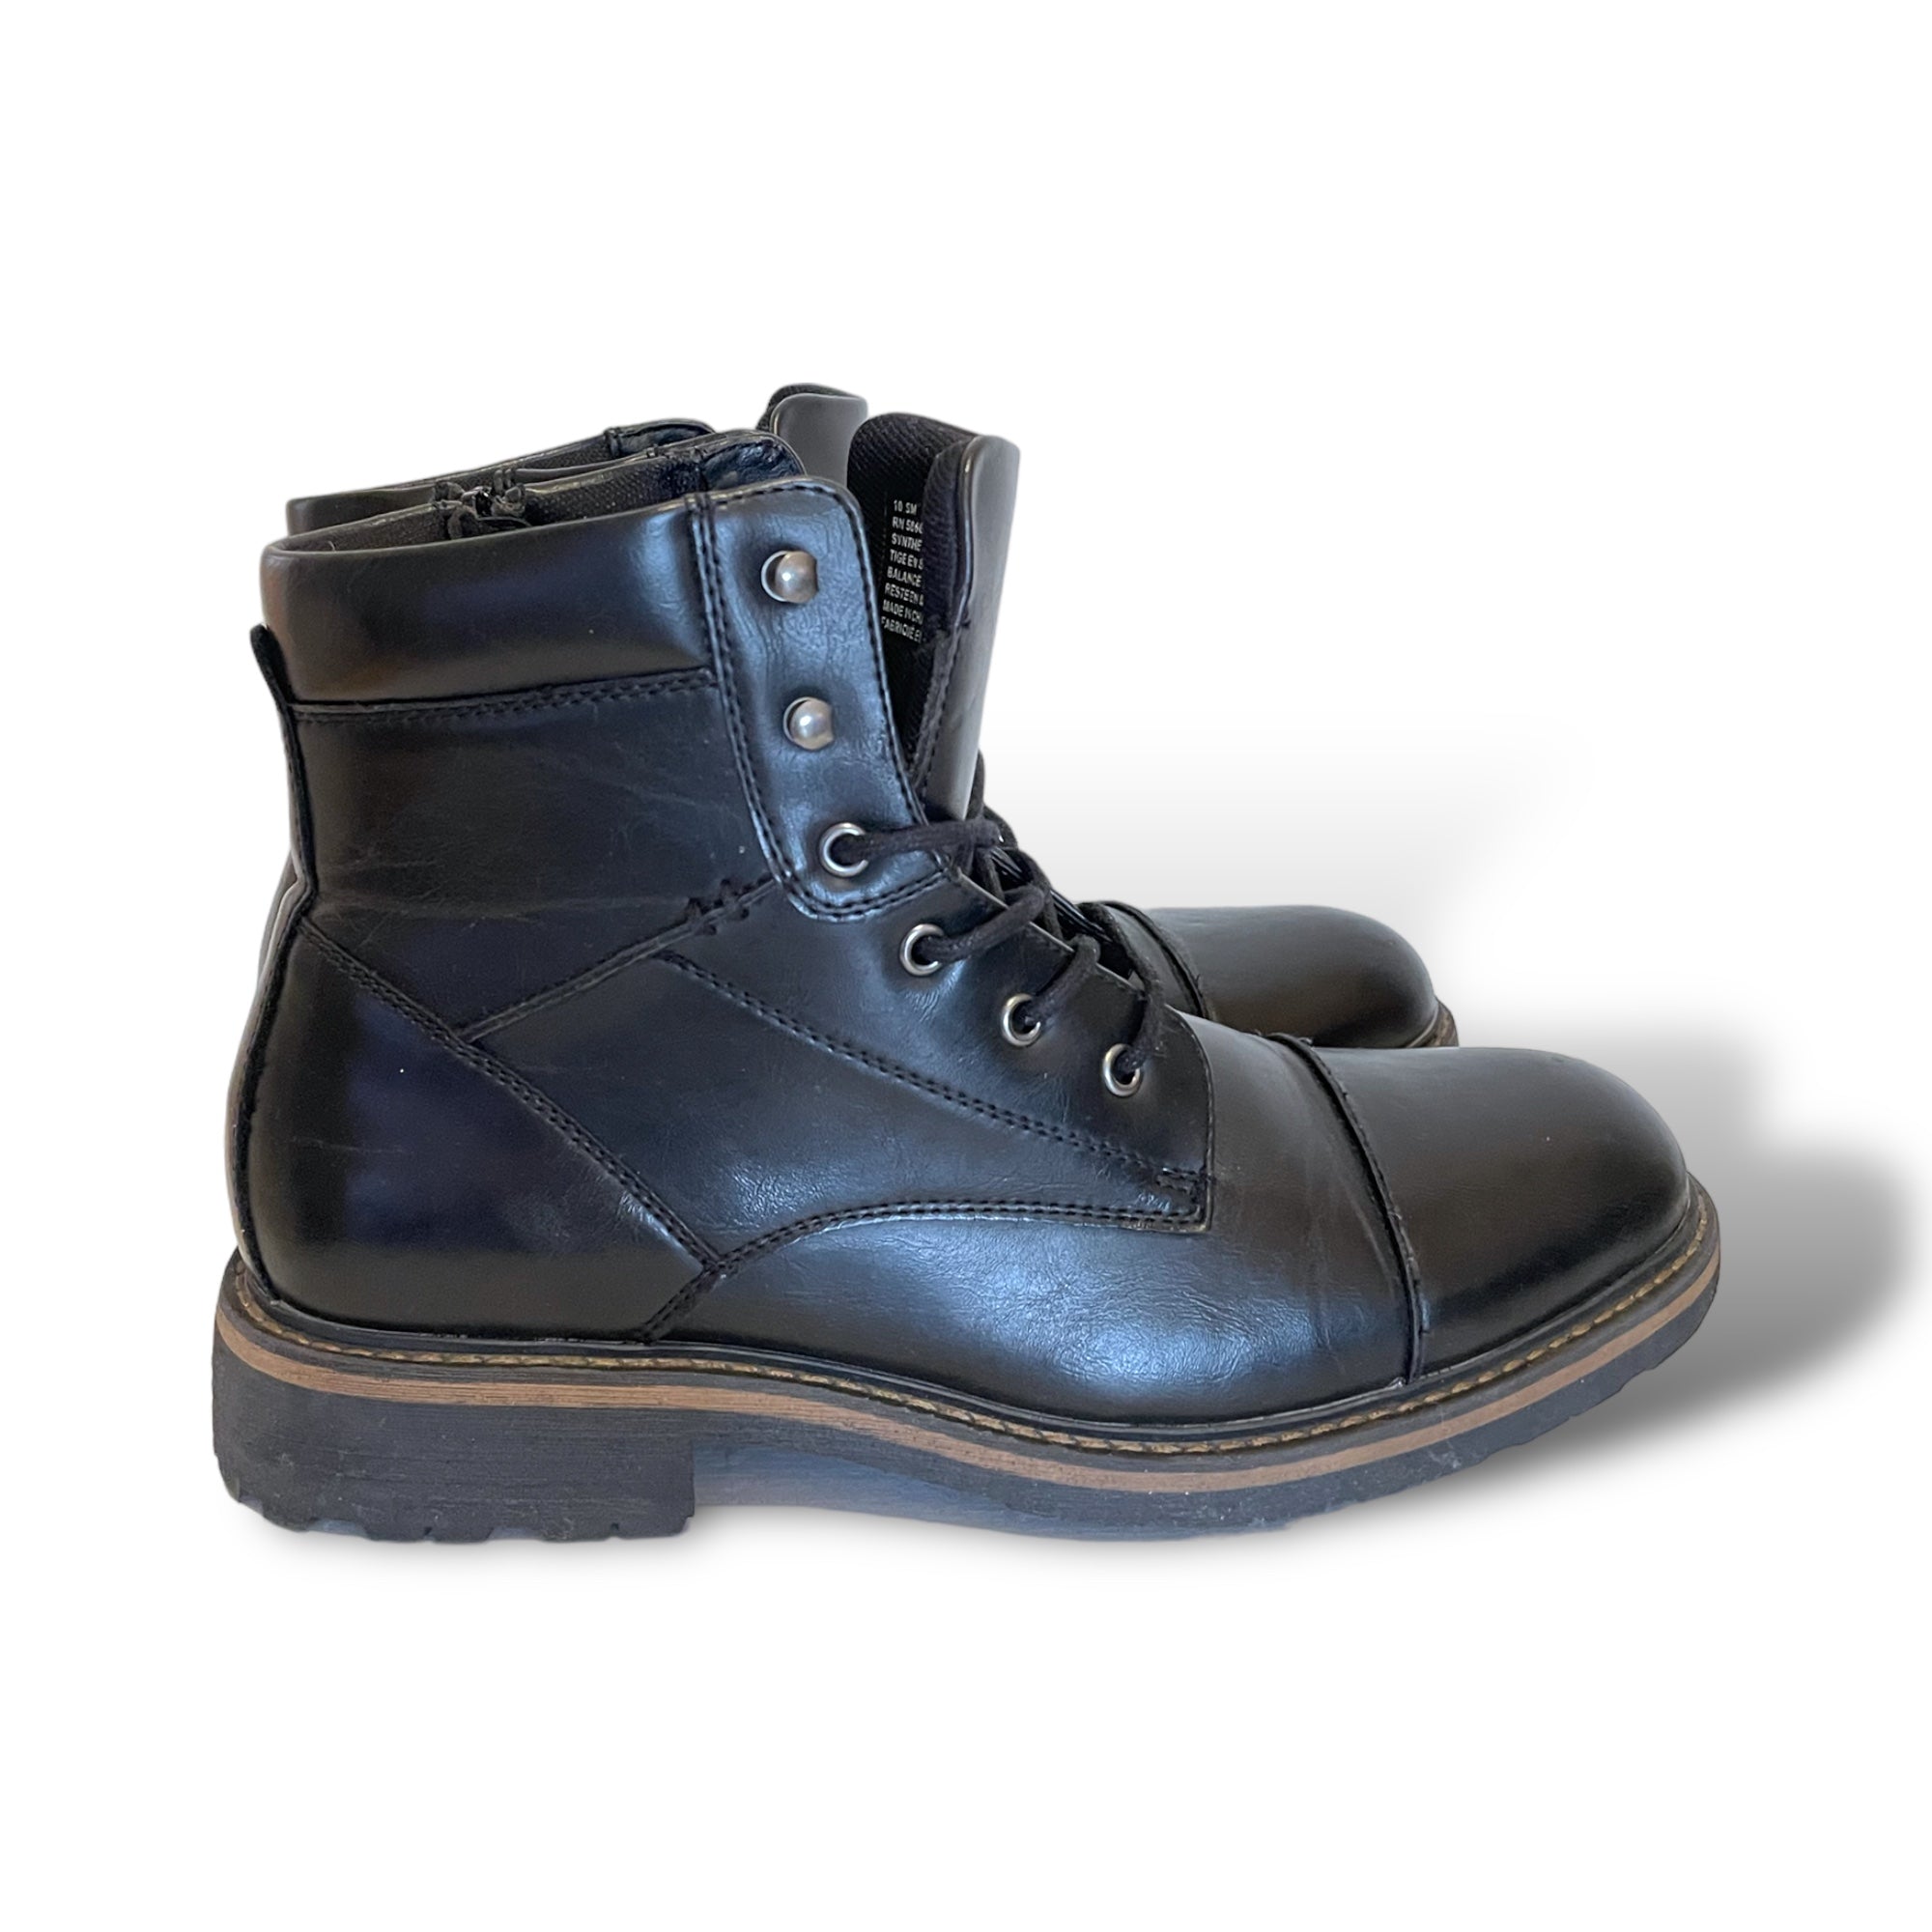 Mens PUBLIC OPINION Black Combat Boots |Size: 10.5|